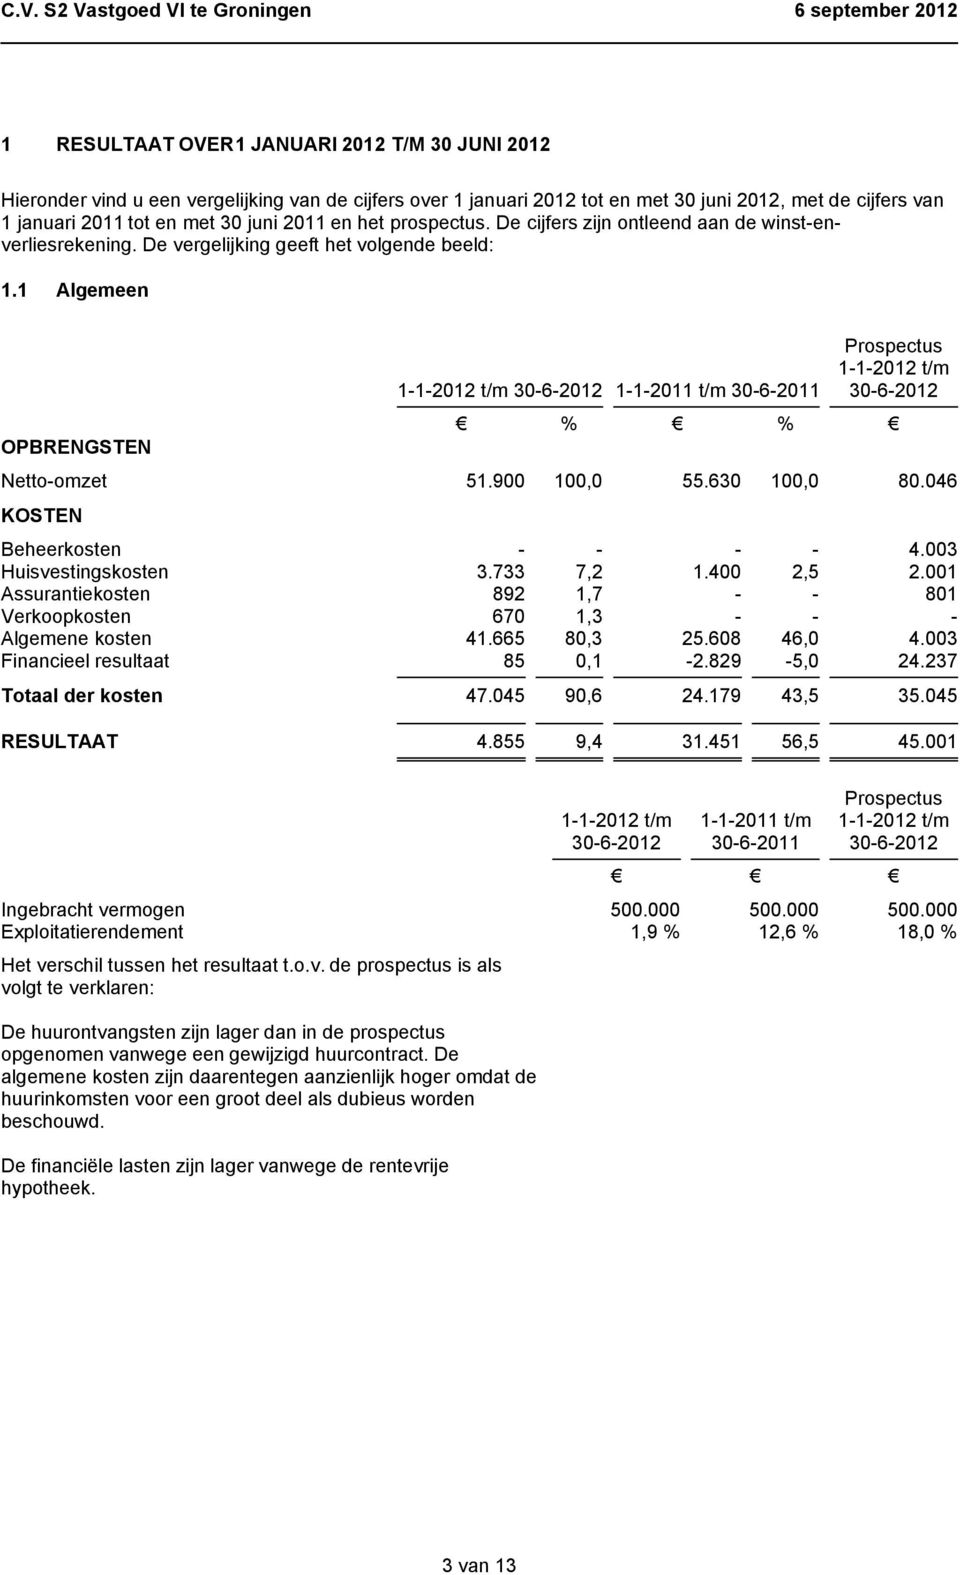 1 Algemeen OPBRENGSTEN 1-1-2011 t/m 30-6-2011 % % Prospectus Netto-omzet 51.900 100,0 55.630 100,0 80.046 KOSTEN Beheerkosten - - - - 4.003 Huisvestingskosten 3.733 7,2 1.400 2,5 2.